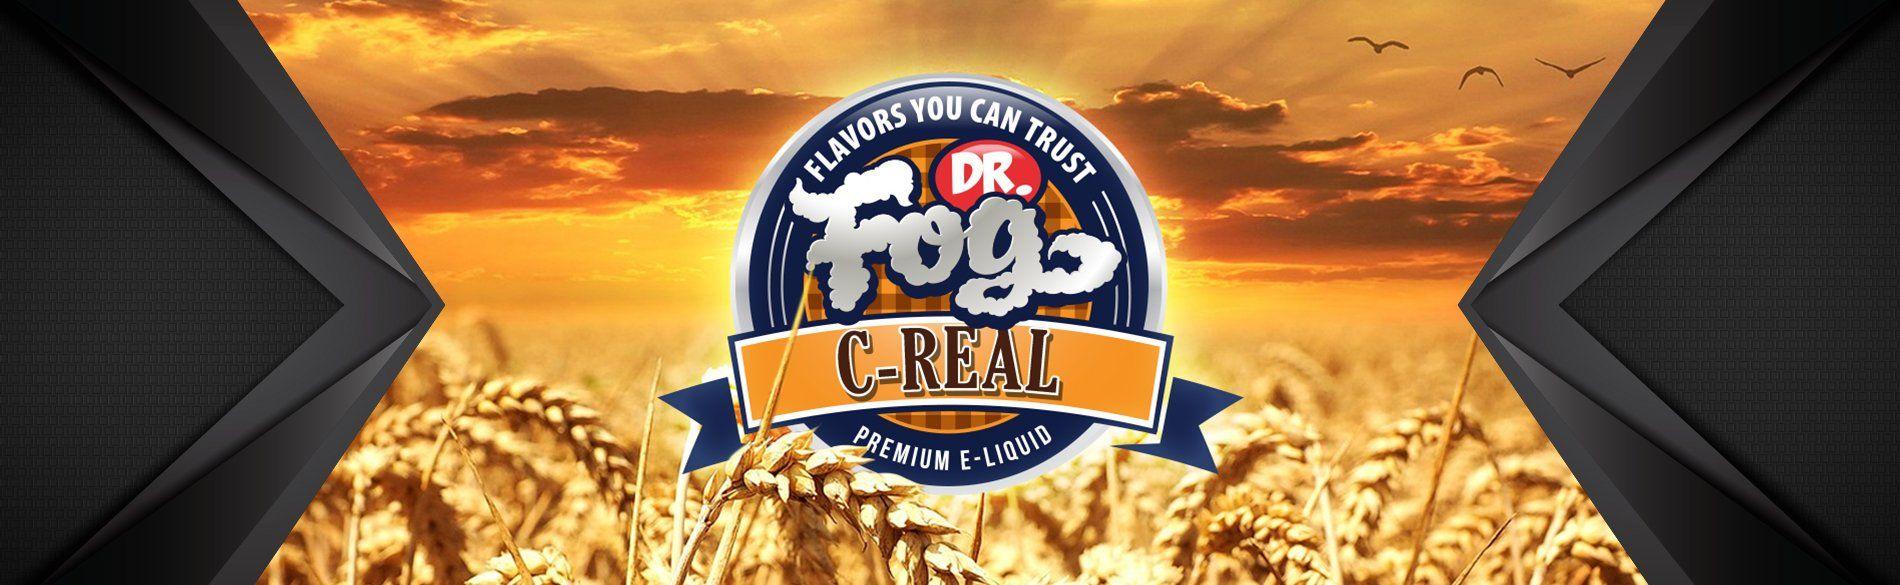 C-Real Logo - Dr. Fog C-Real Series - Premium Liquid Labs Inc.